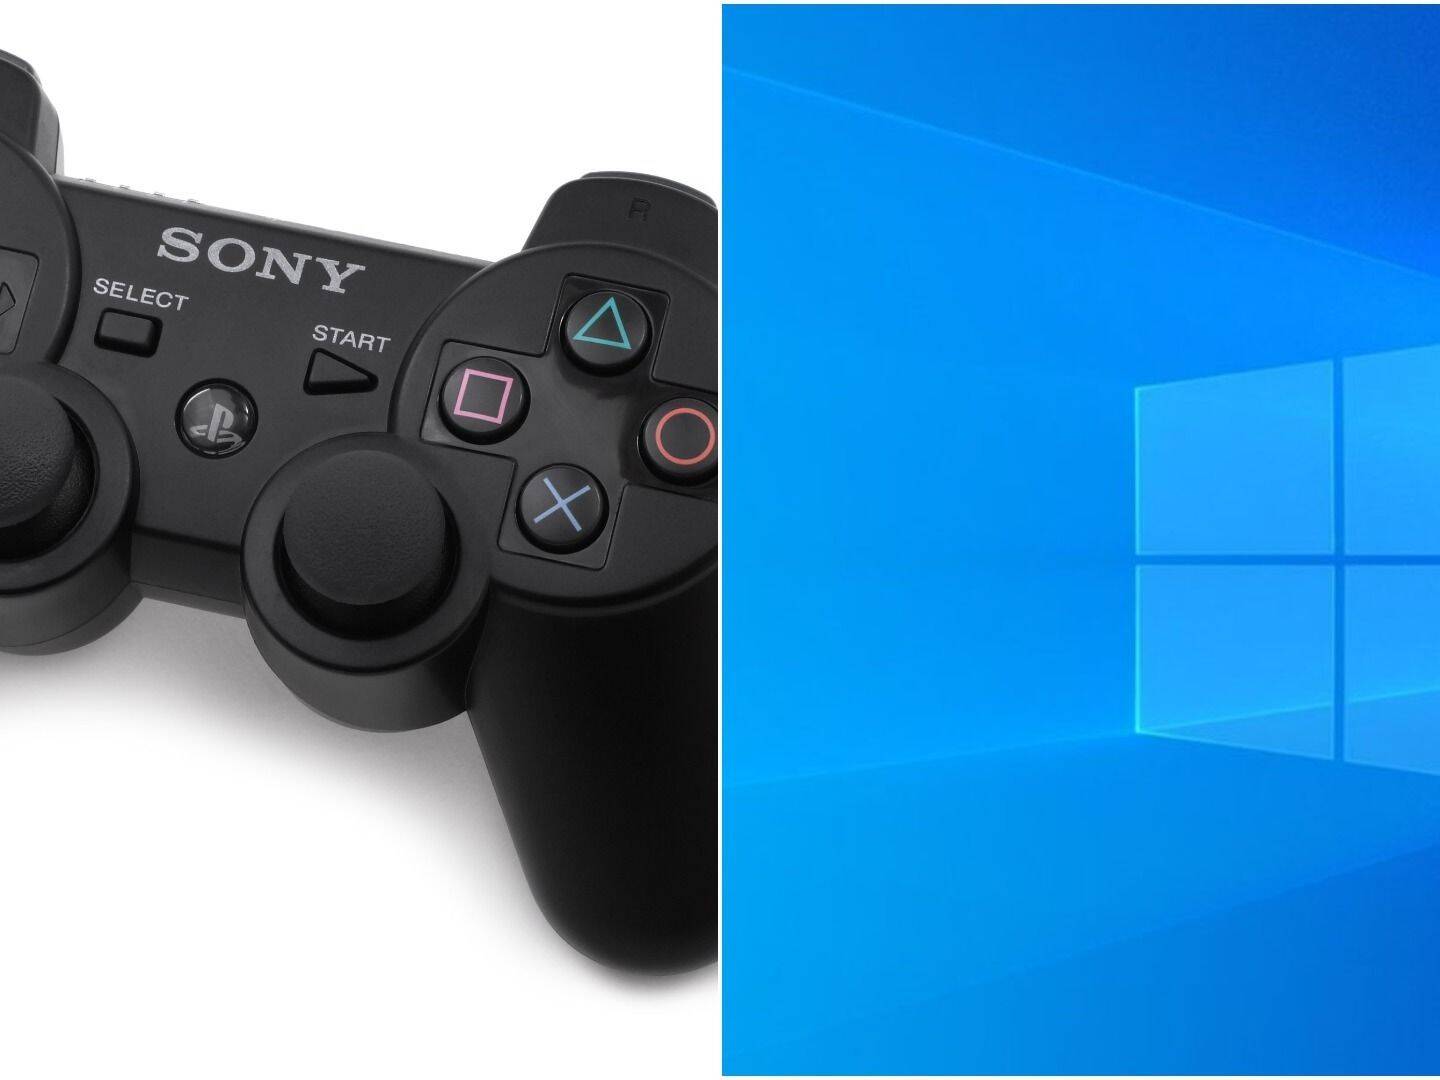 Cómo jugar en tu PlayStation 3 con tus controles de PlayStation 4?